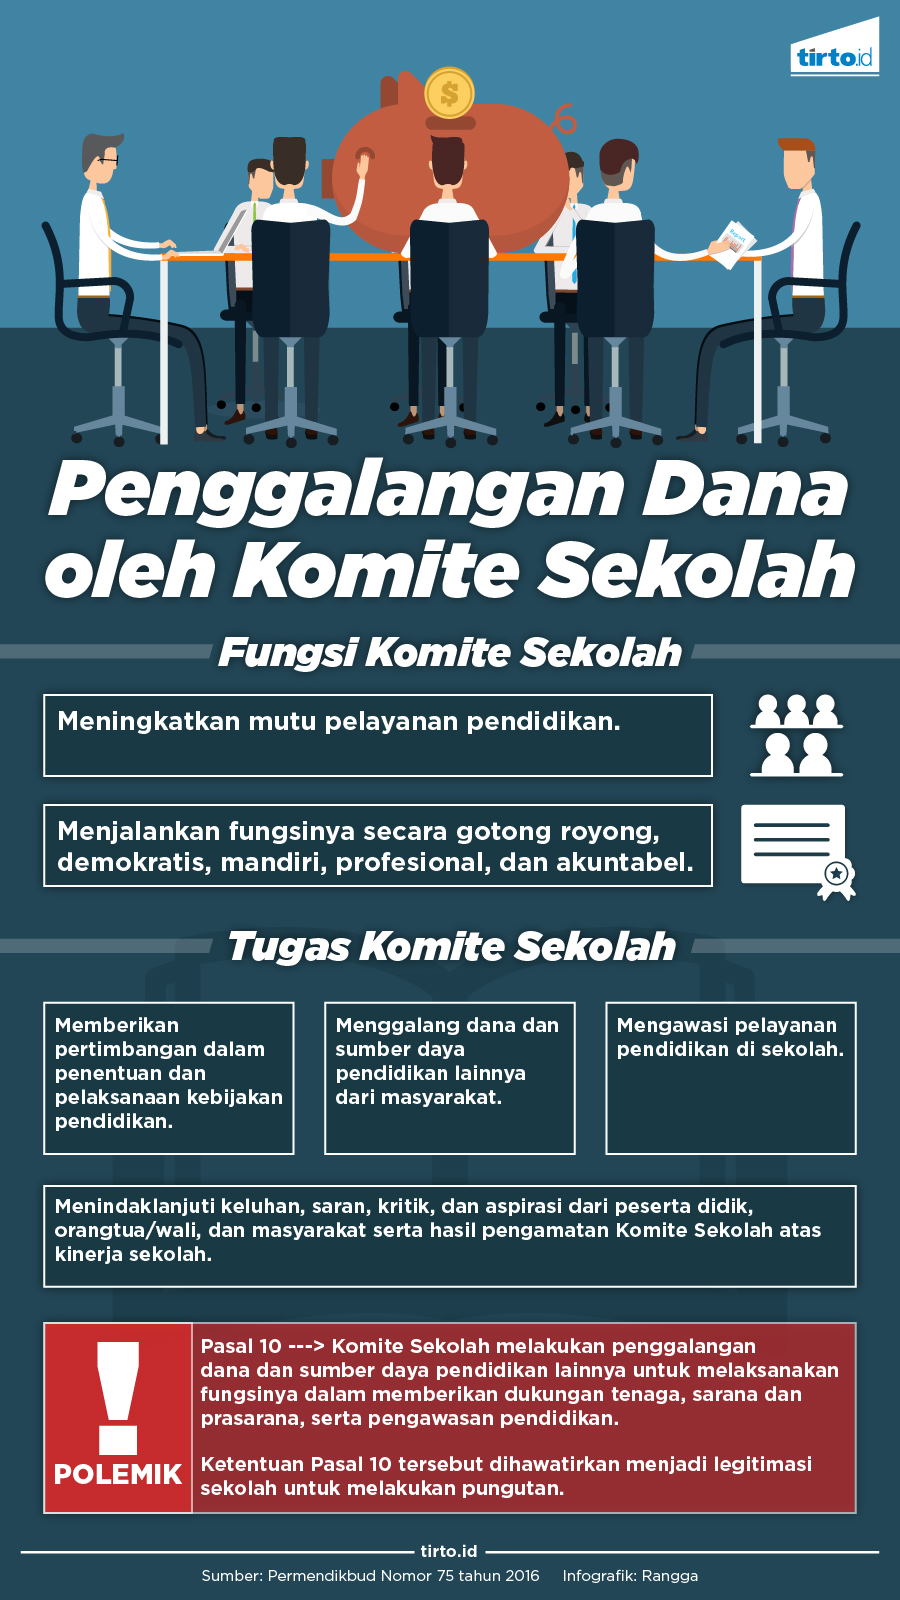 Infografik Penggalangan Dana Komite